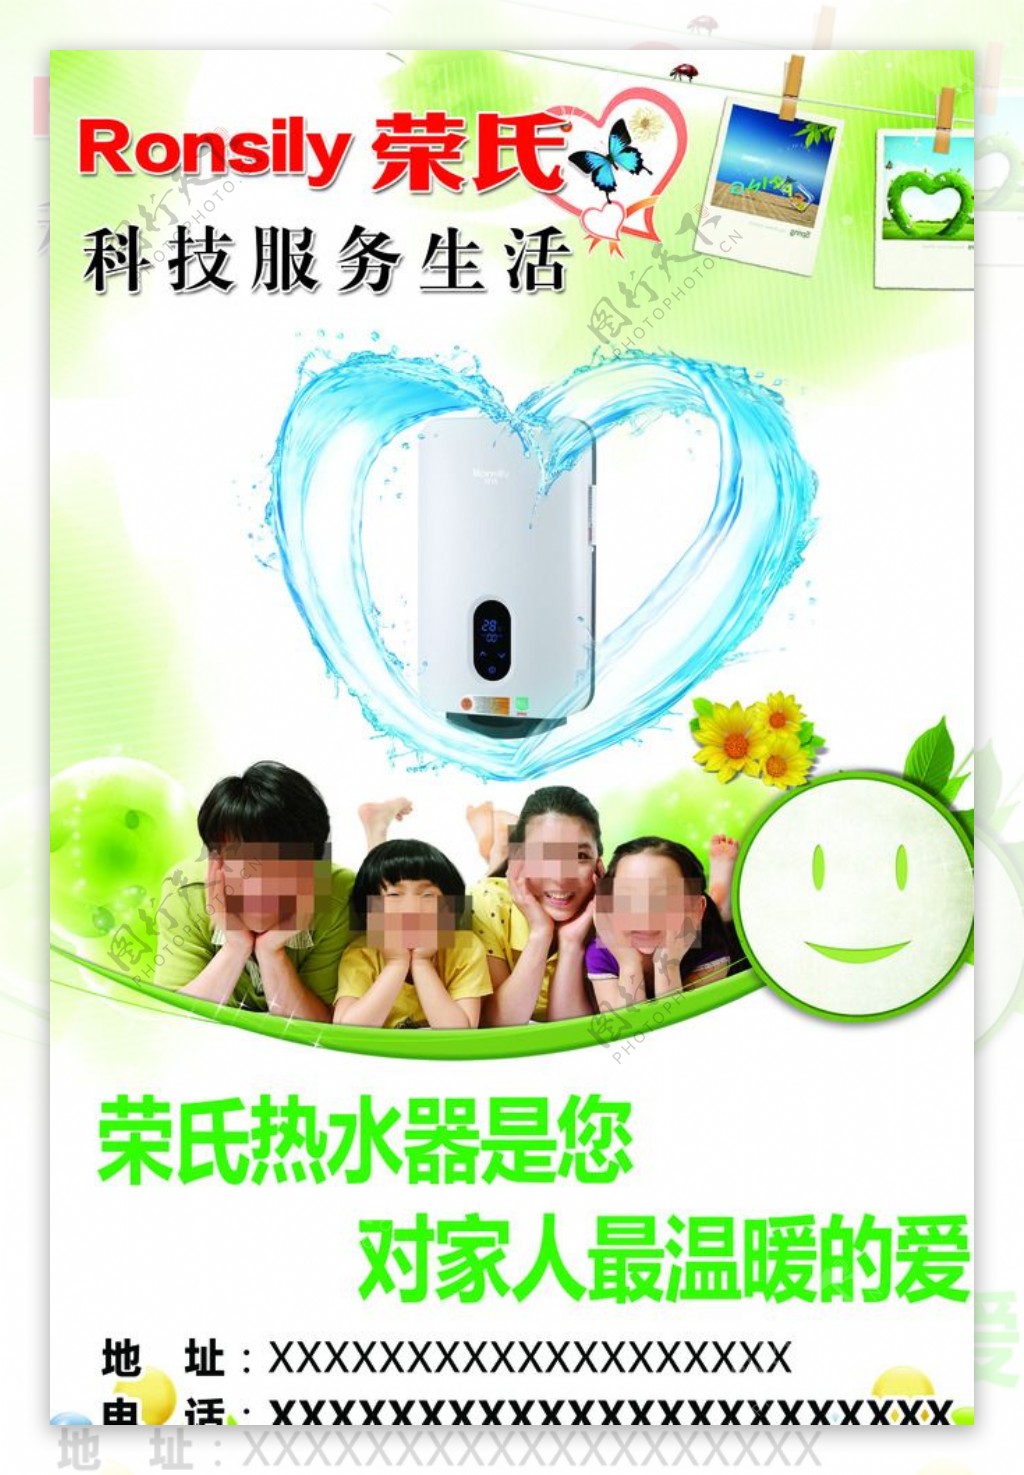 荣氏热水器广告图片